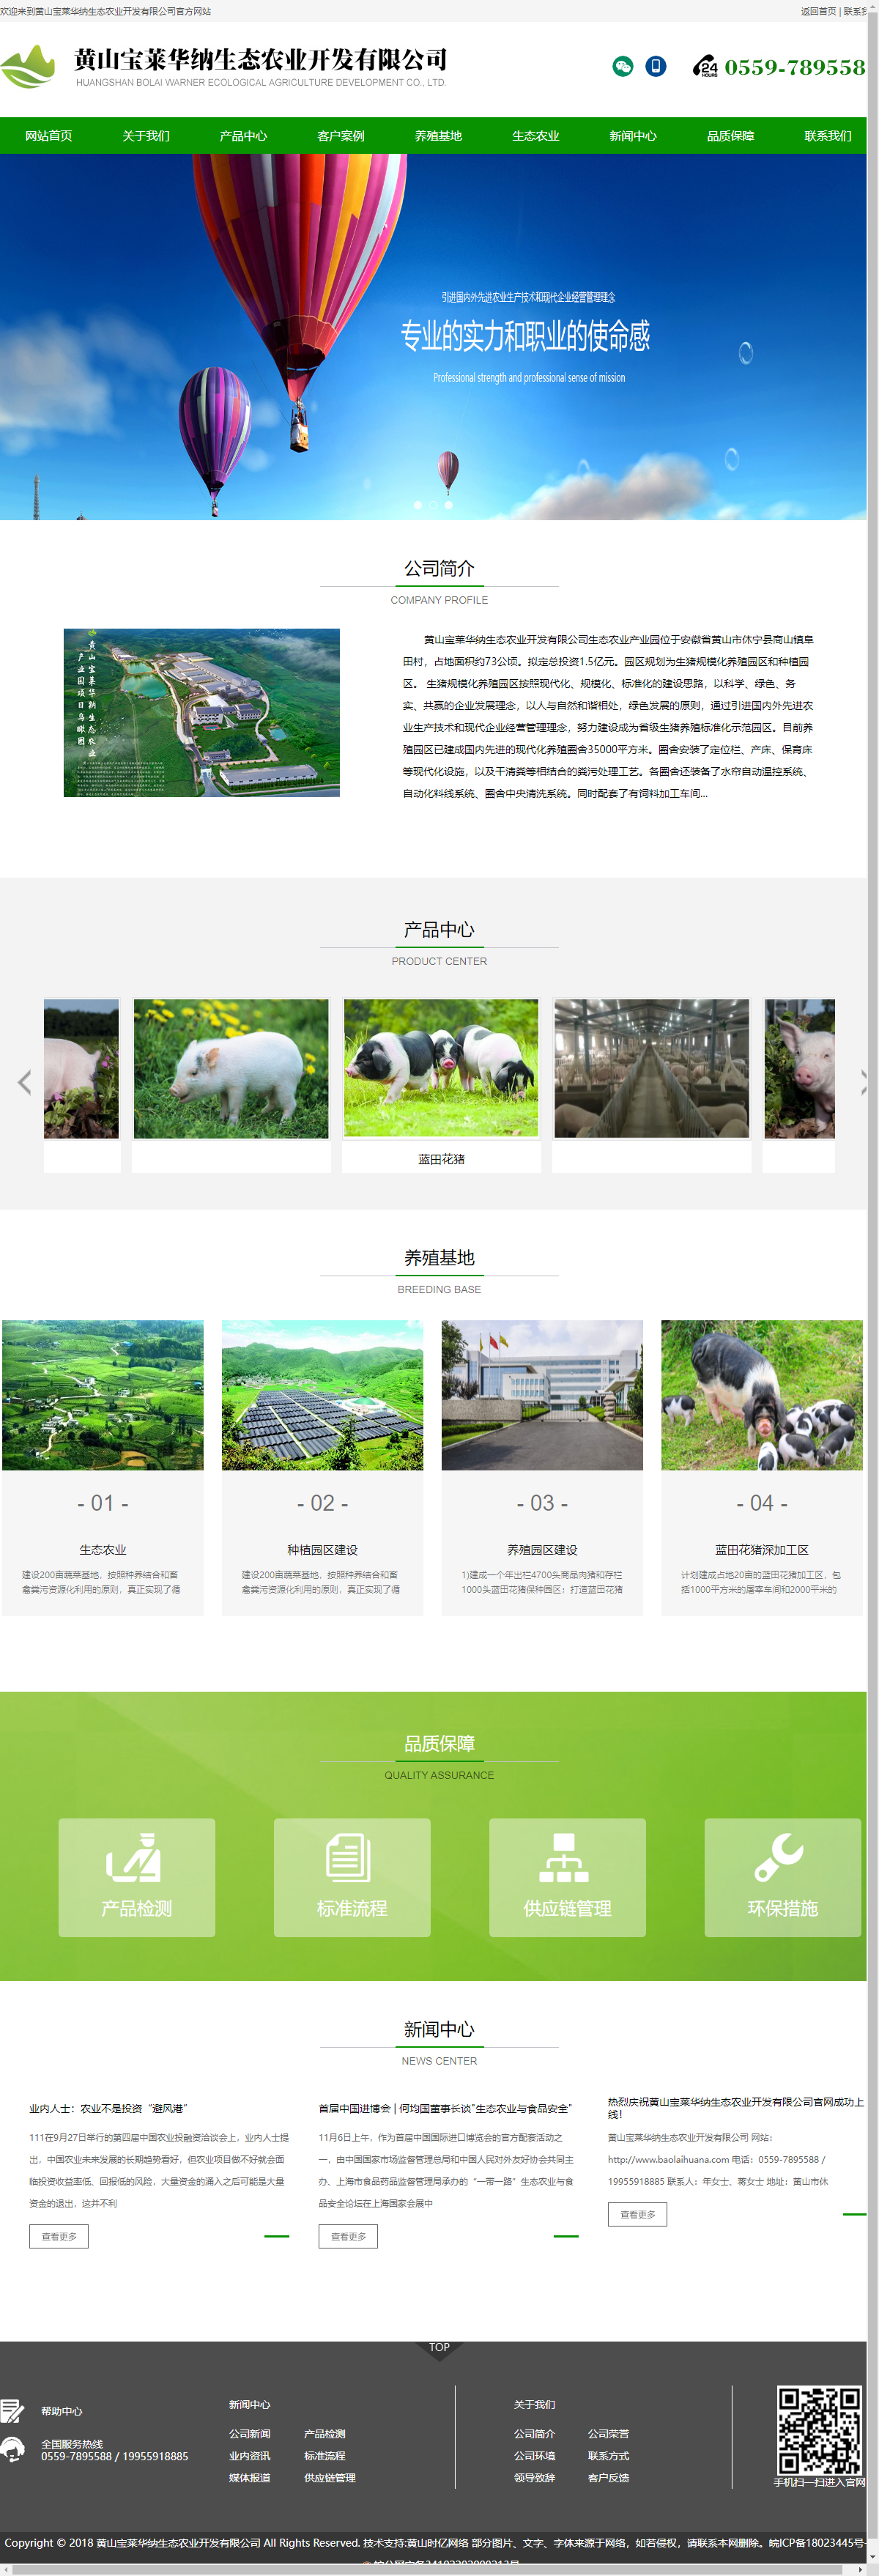 黄山宝莱华纳生态农业开发有限公司网站案例